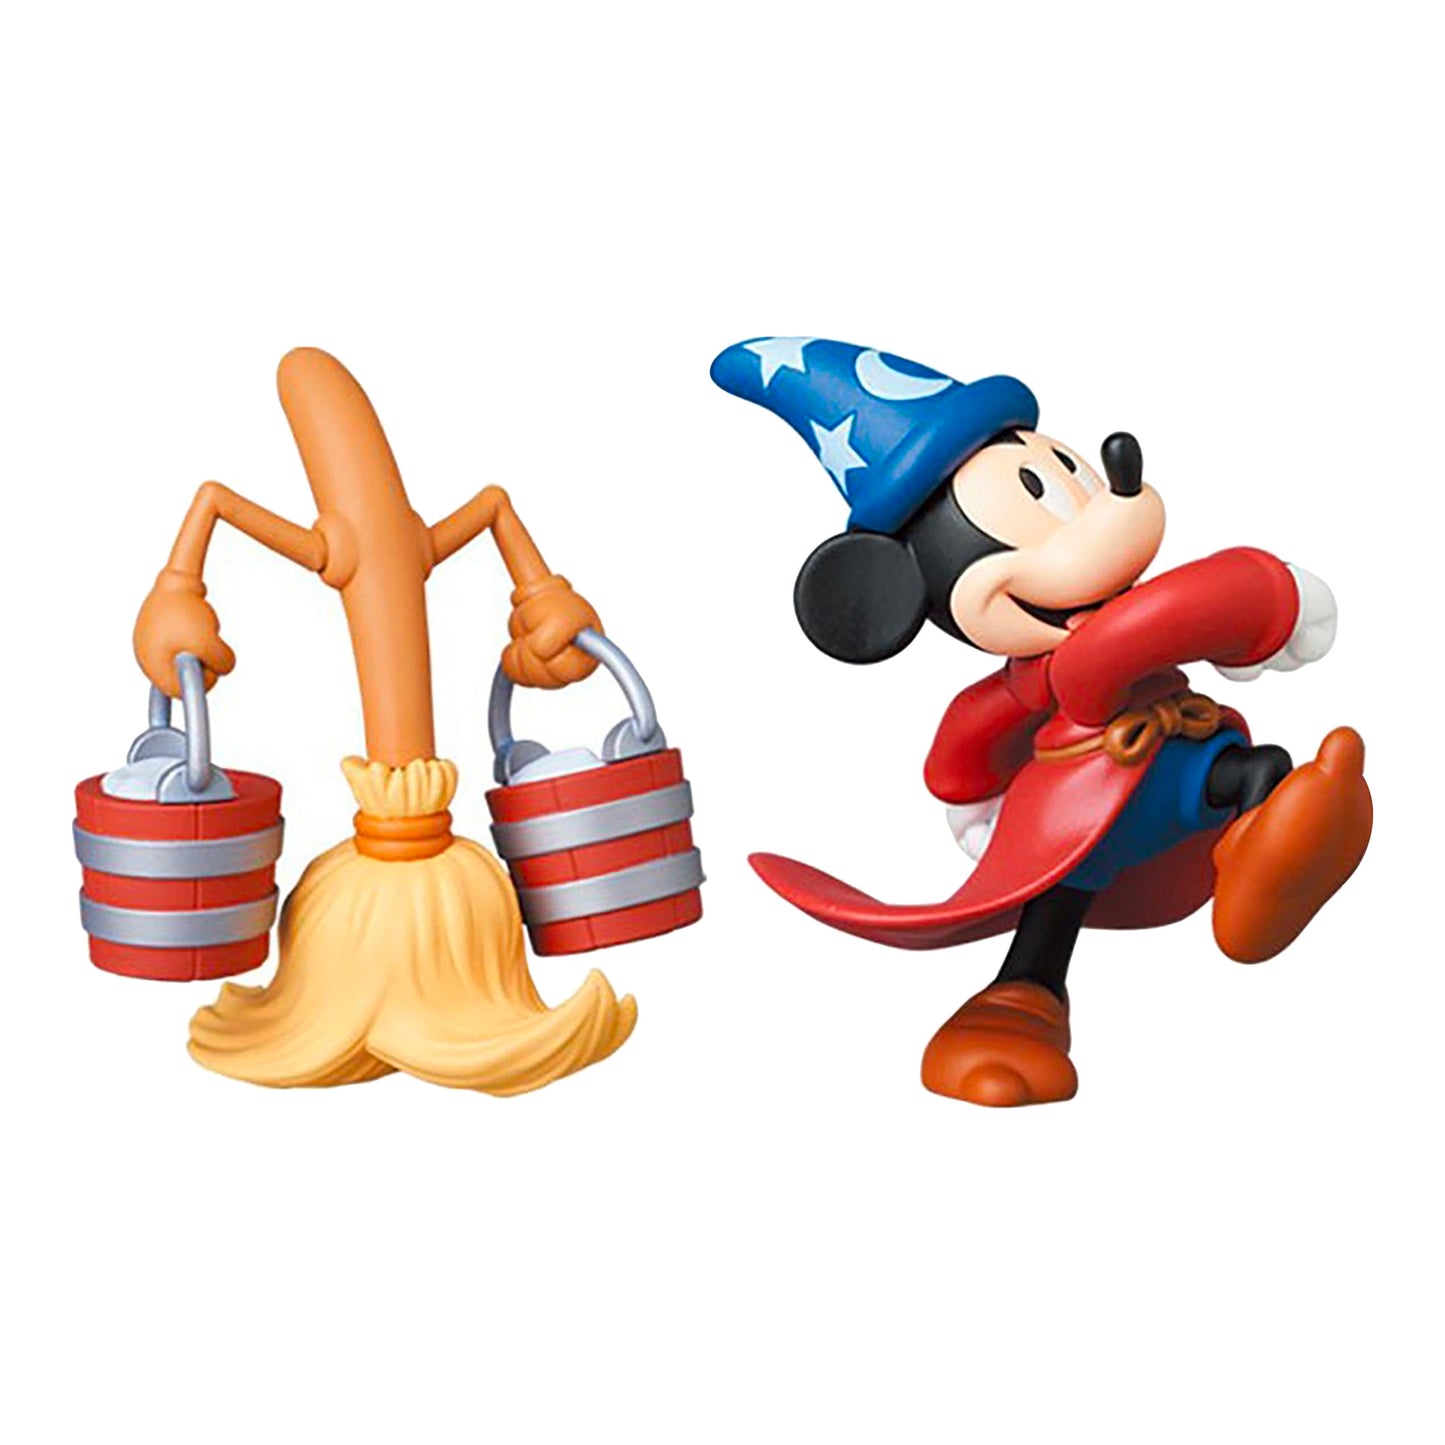 MEDICOM TOY: UDF - Fantasia Mickey Mouse & Broom Figure